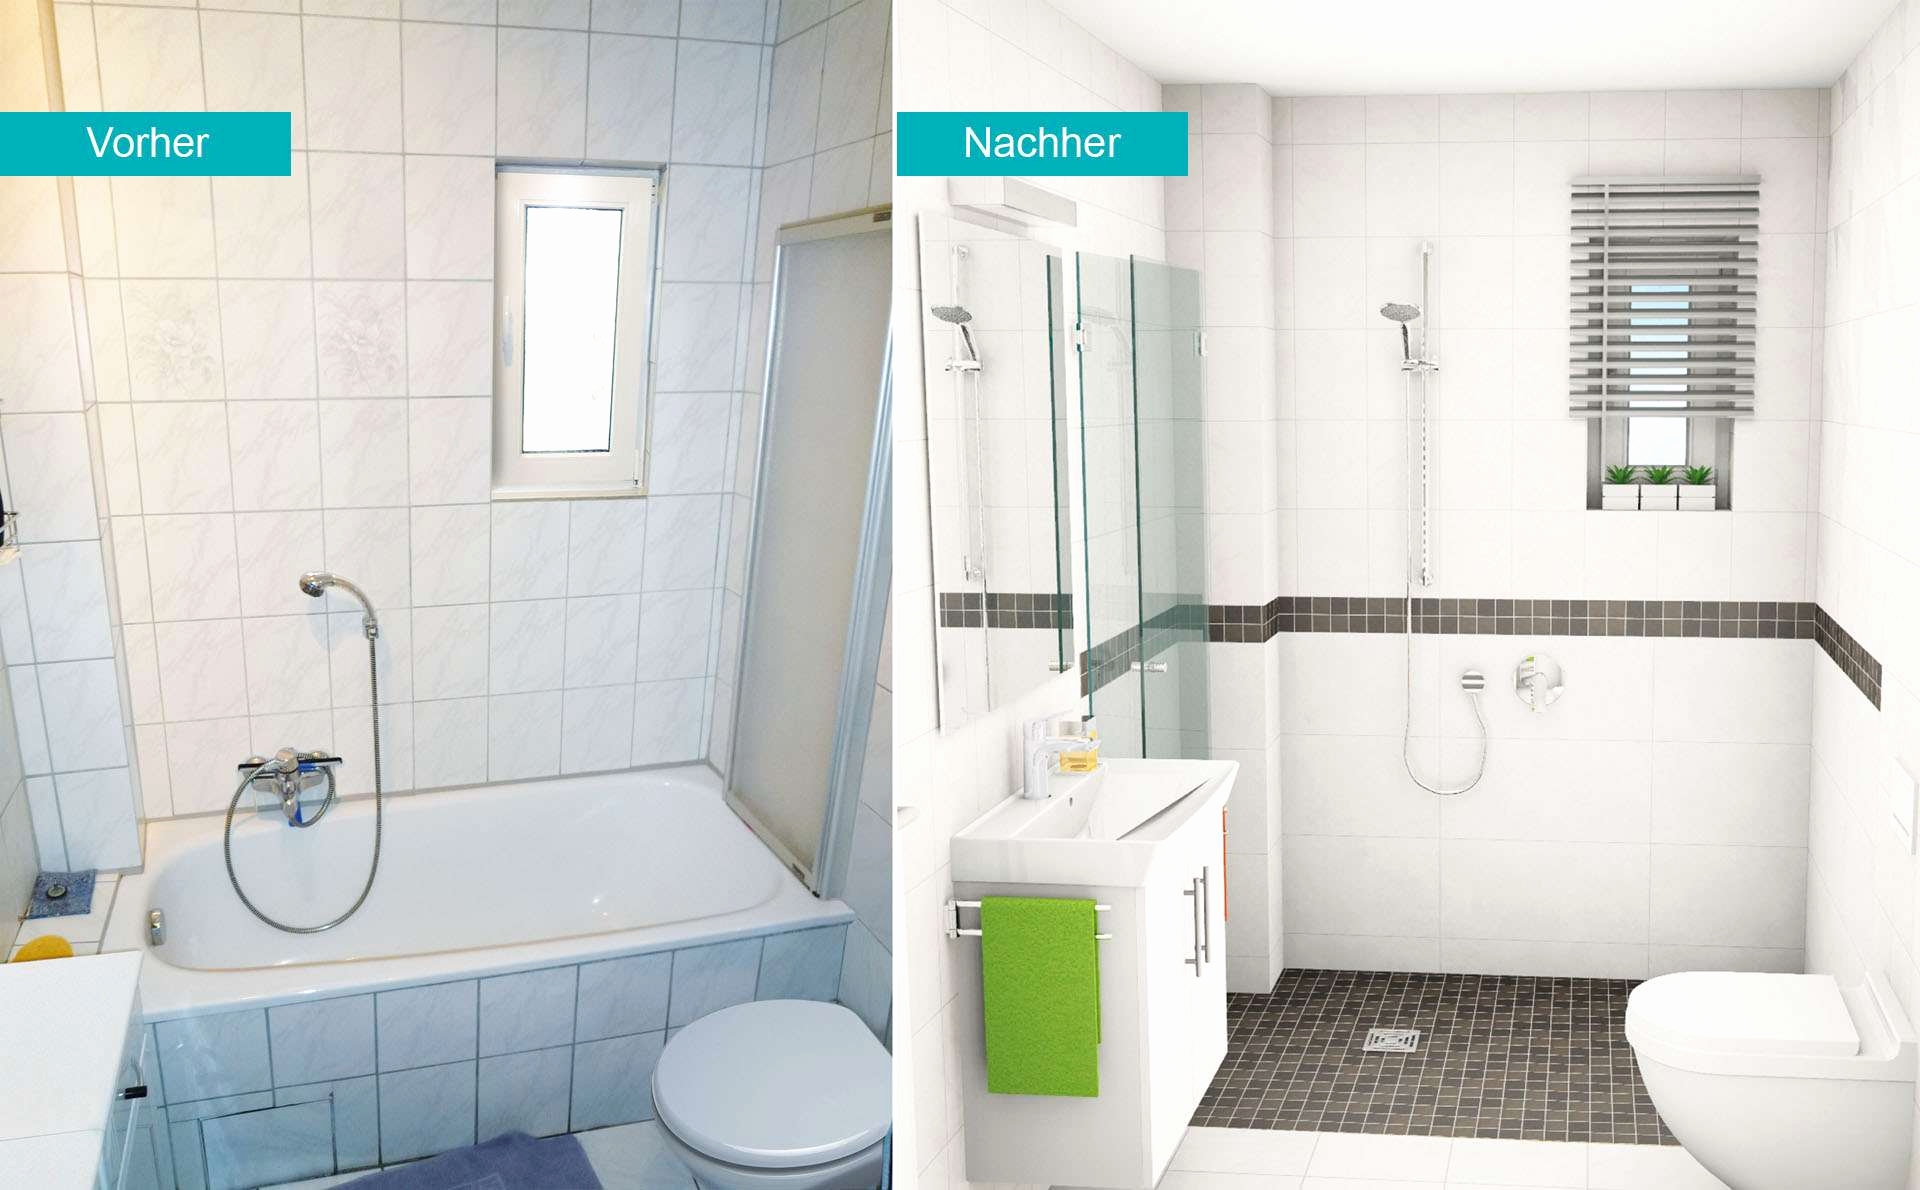 badezimmer renovieren ideen uppigkeit 38 frisch bad renovieren kosten pic von badezimmer renovieren ideen